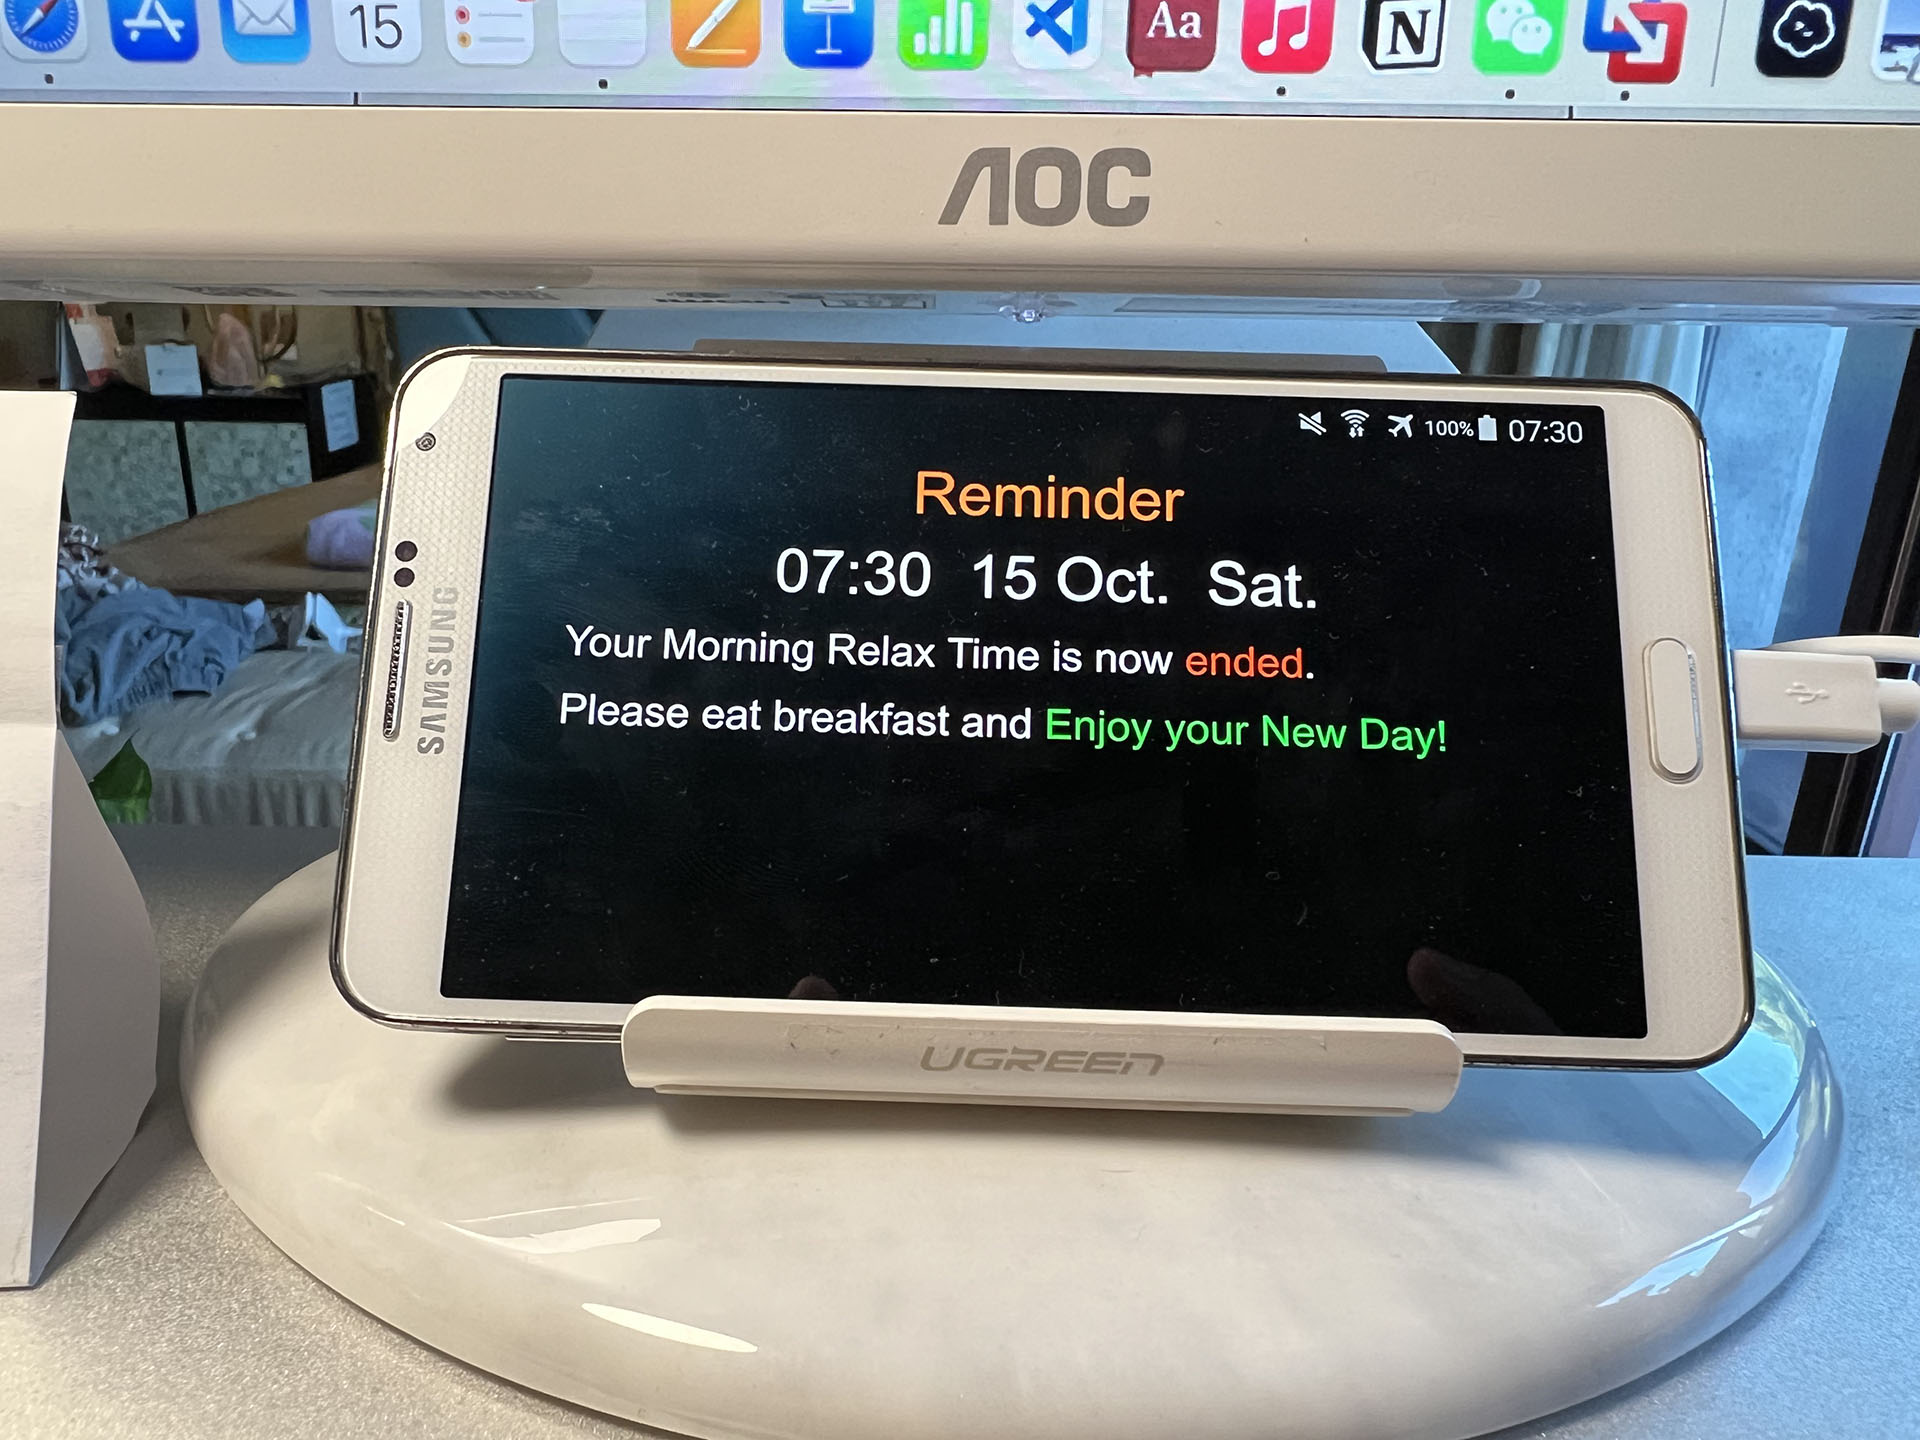 Reminder Pop-ups on Smart Clock